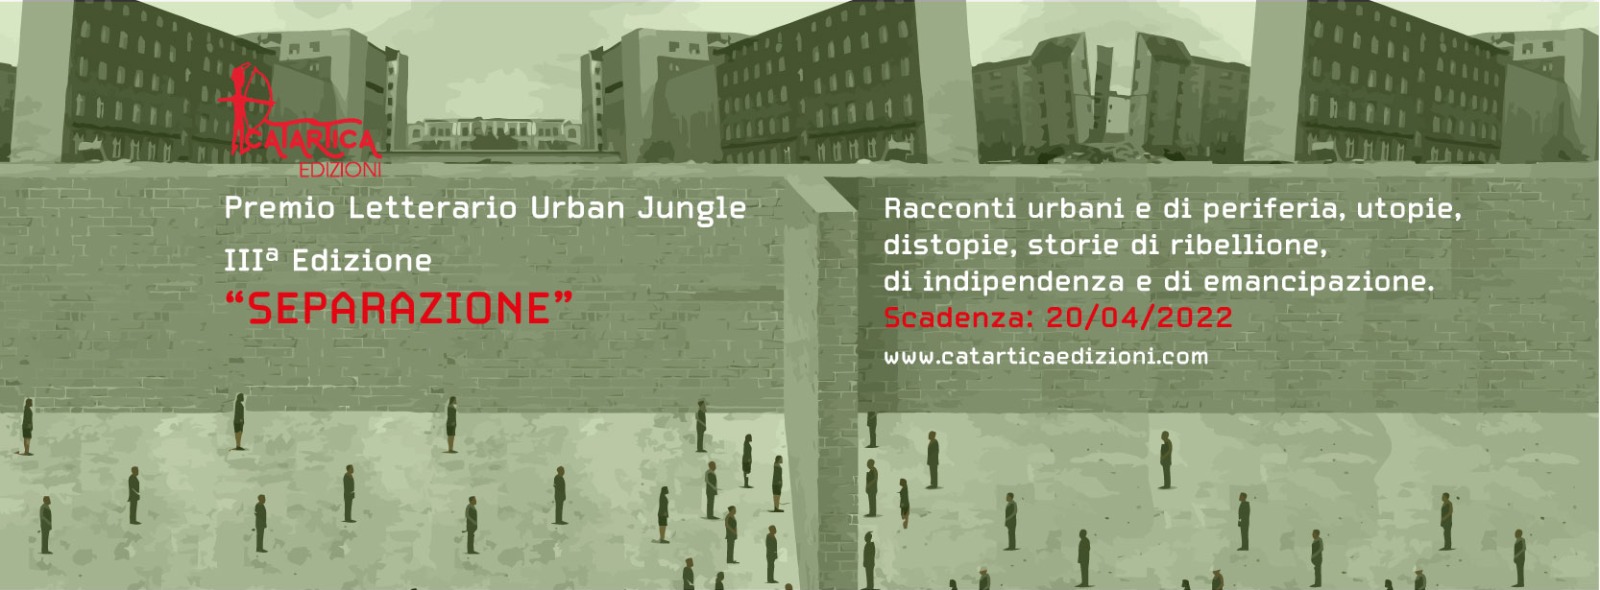 3° Premio Letterario "Urban Jungle"